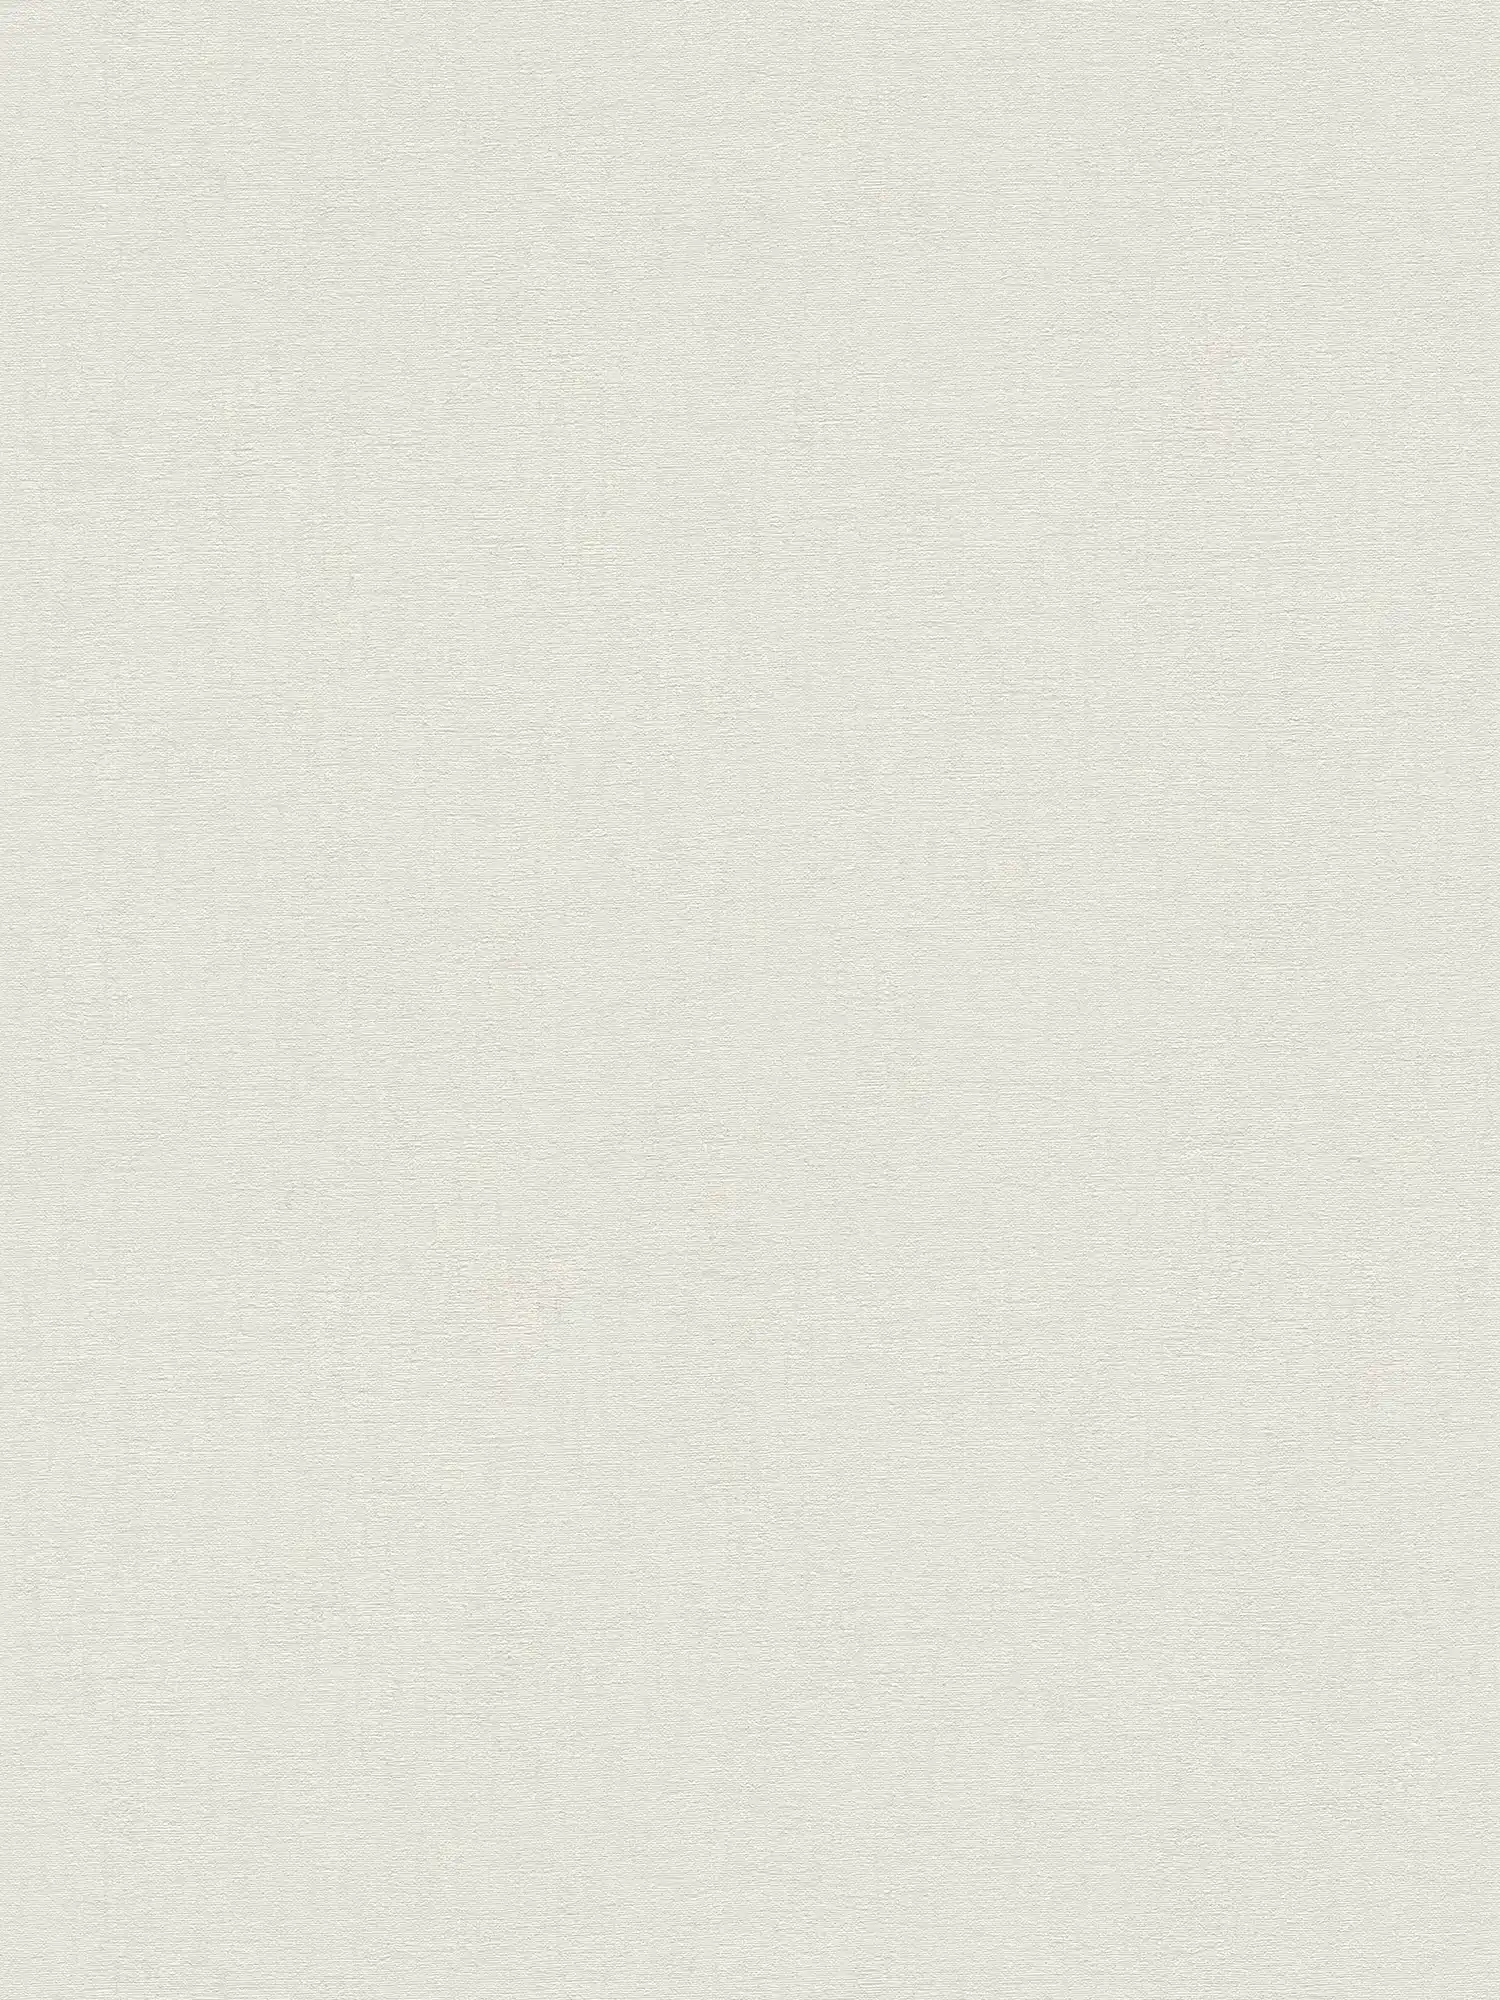 Carta da parati monocolore in tessuto non tessuto con motivo tessile - bianco, grigio chiaro
